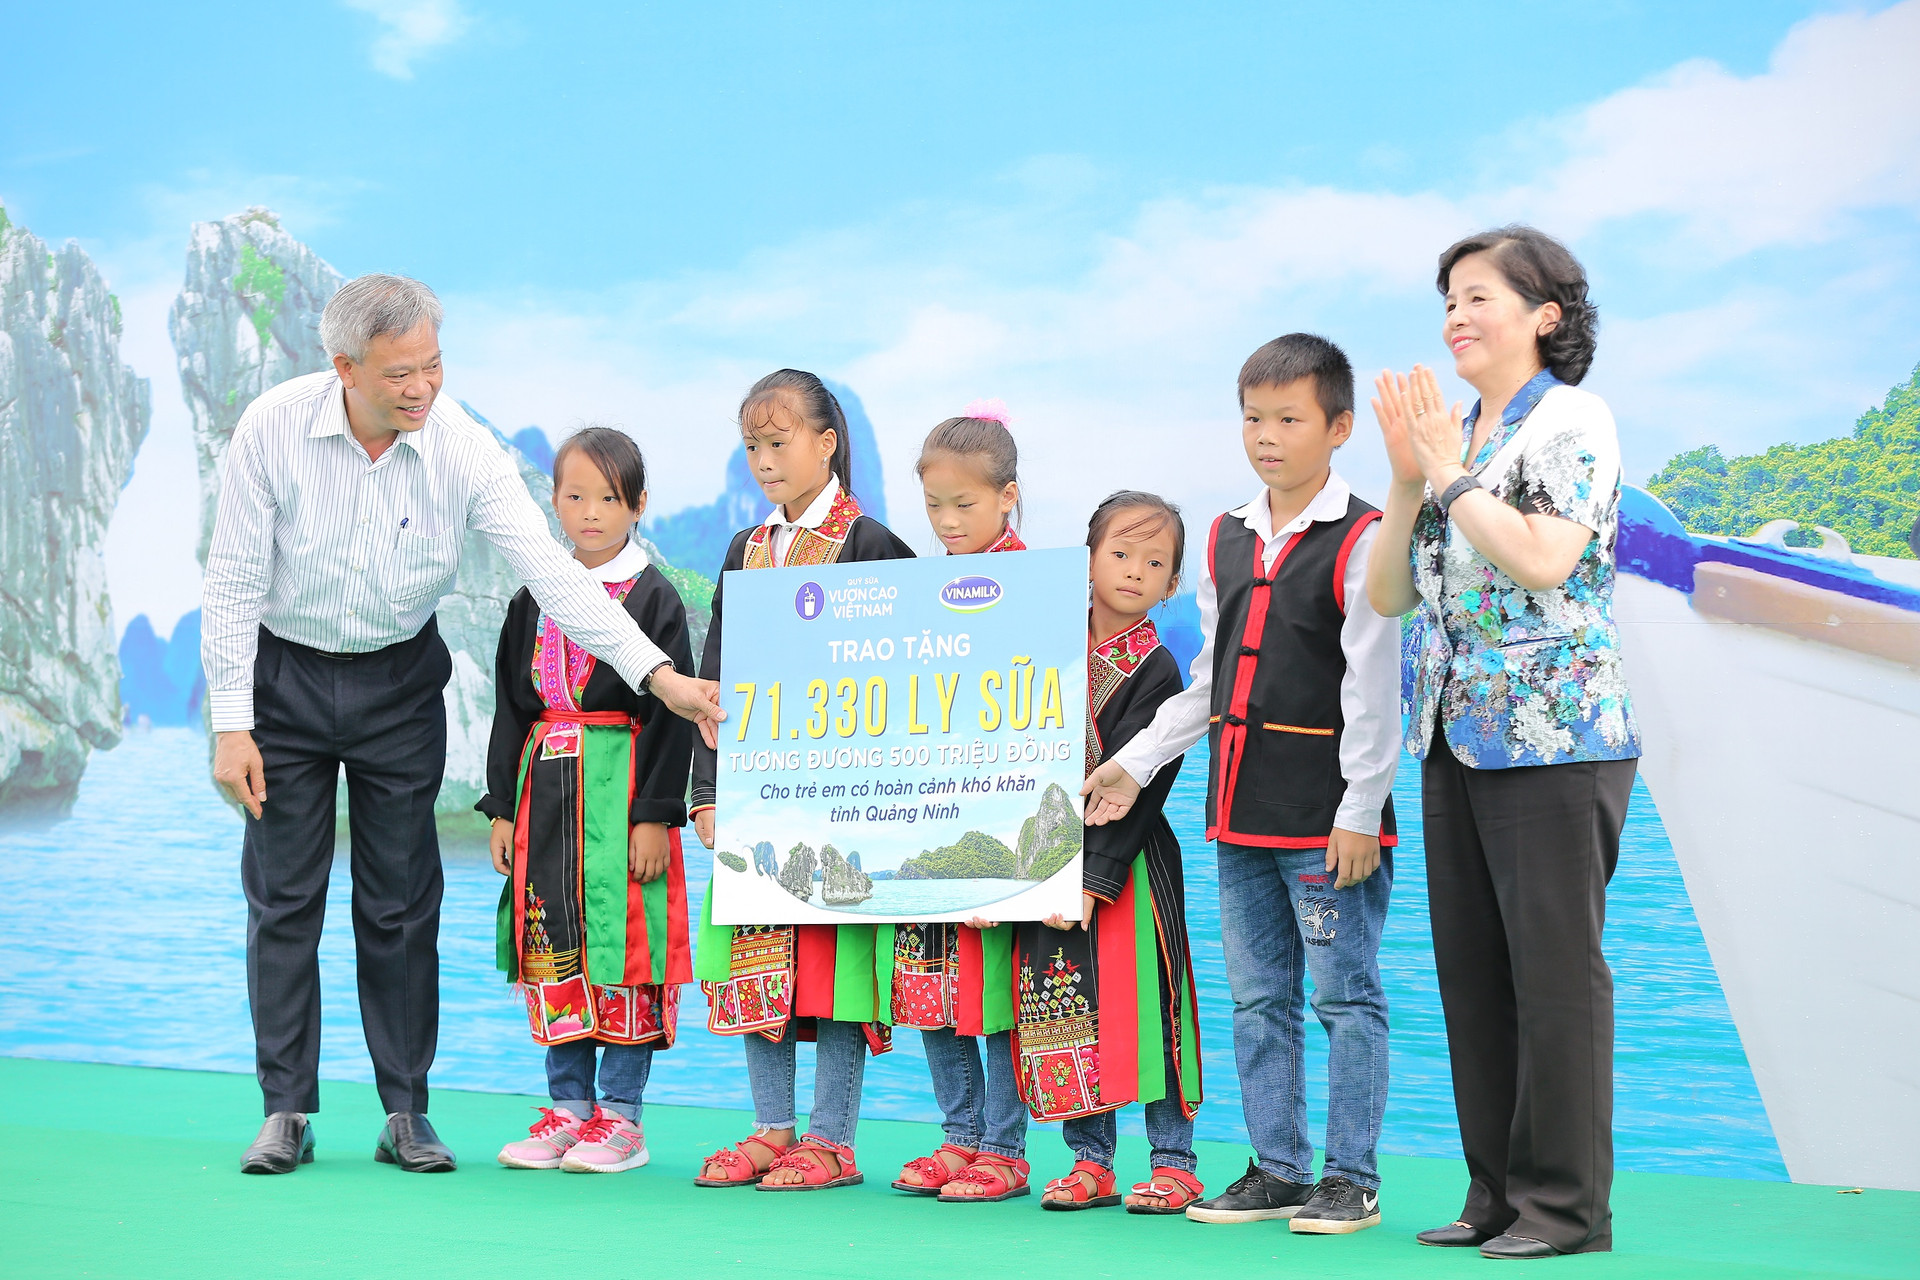 Lễ trao tặng Trường TH & THCS Đồng Sơn và Quỹ sữa Vươn cao Việt Nam trao tặng sữa cho trẻ em Tỉnh Quảng Ninh